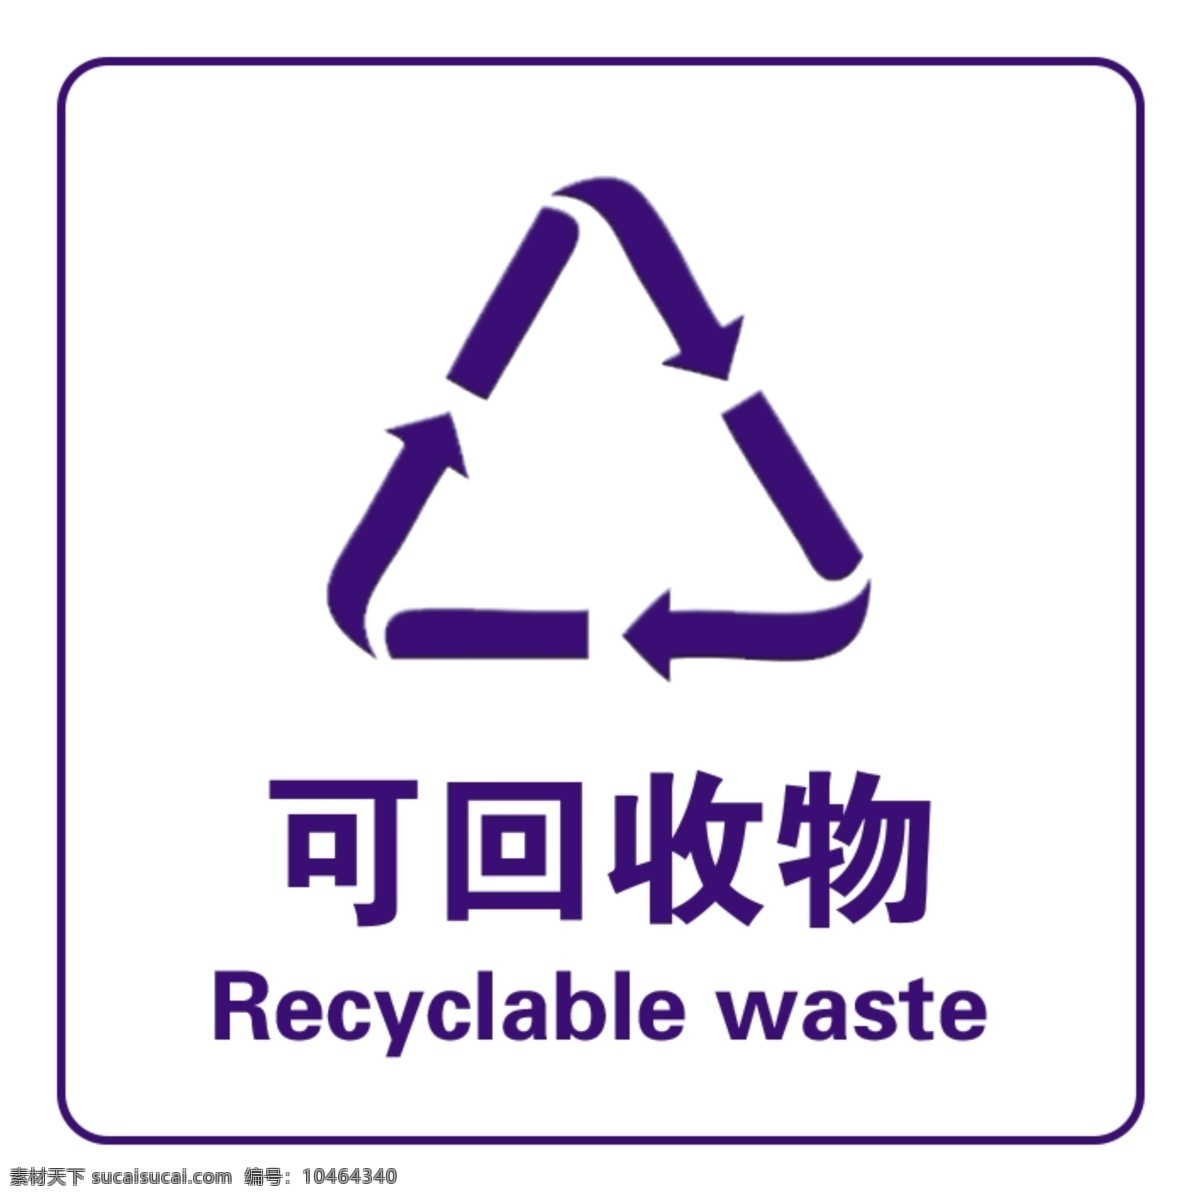 可回收物图片 垃圾分类 垃圾回收 可回收垃圾 可回收物 垃圾 分层